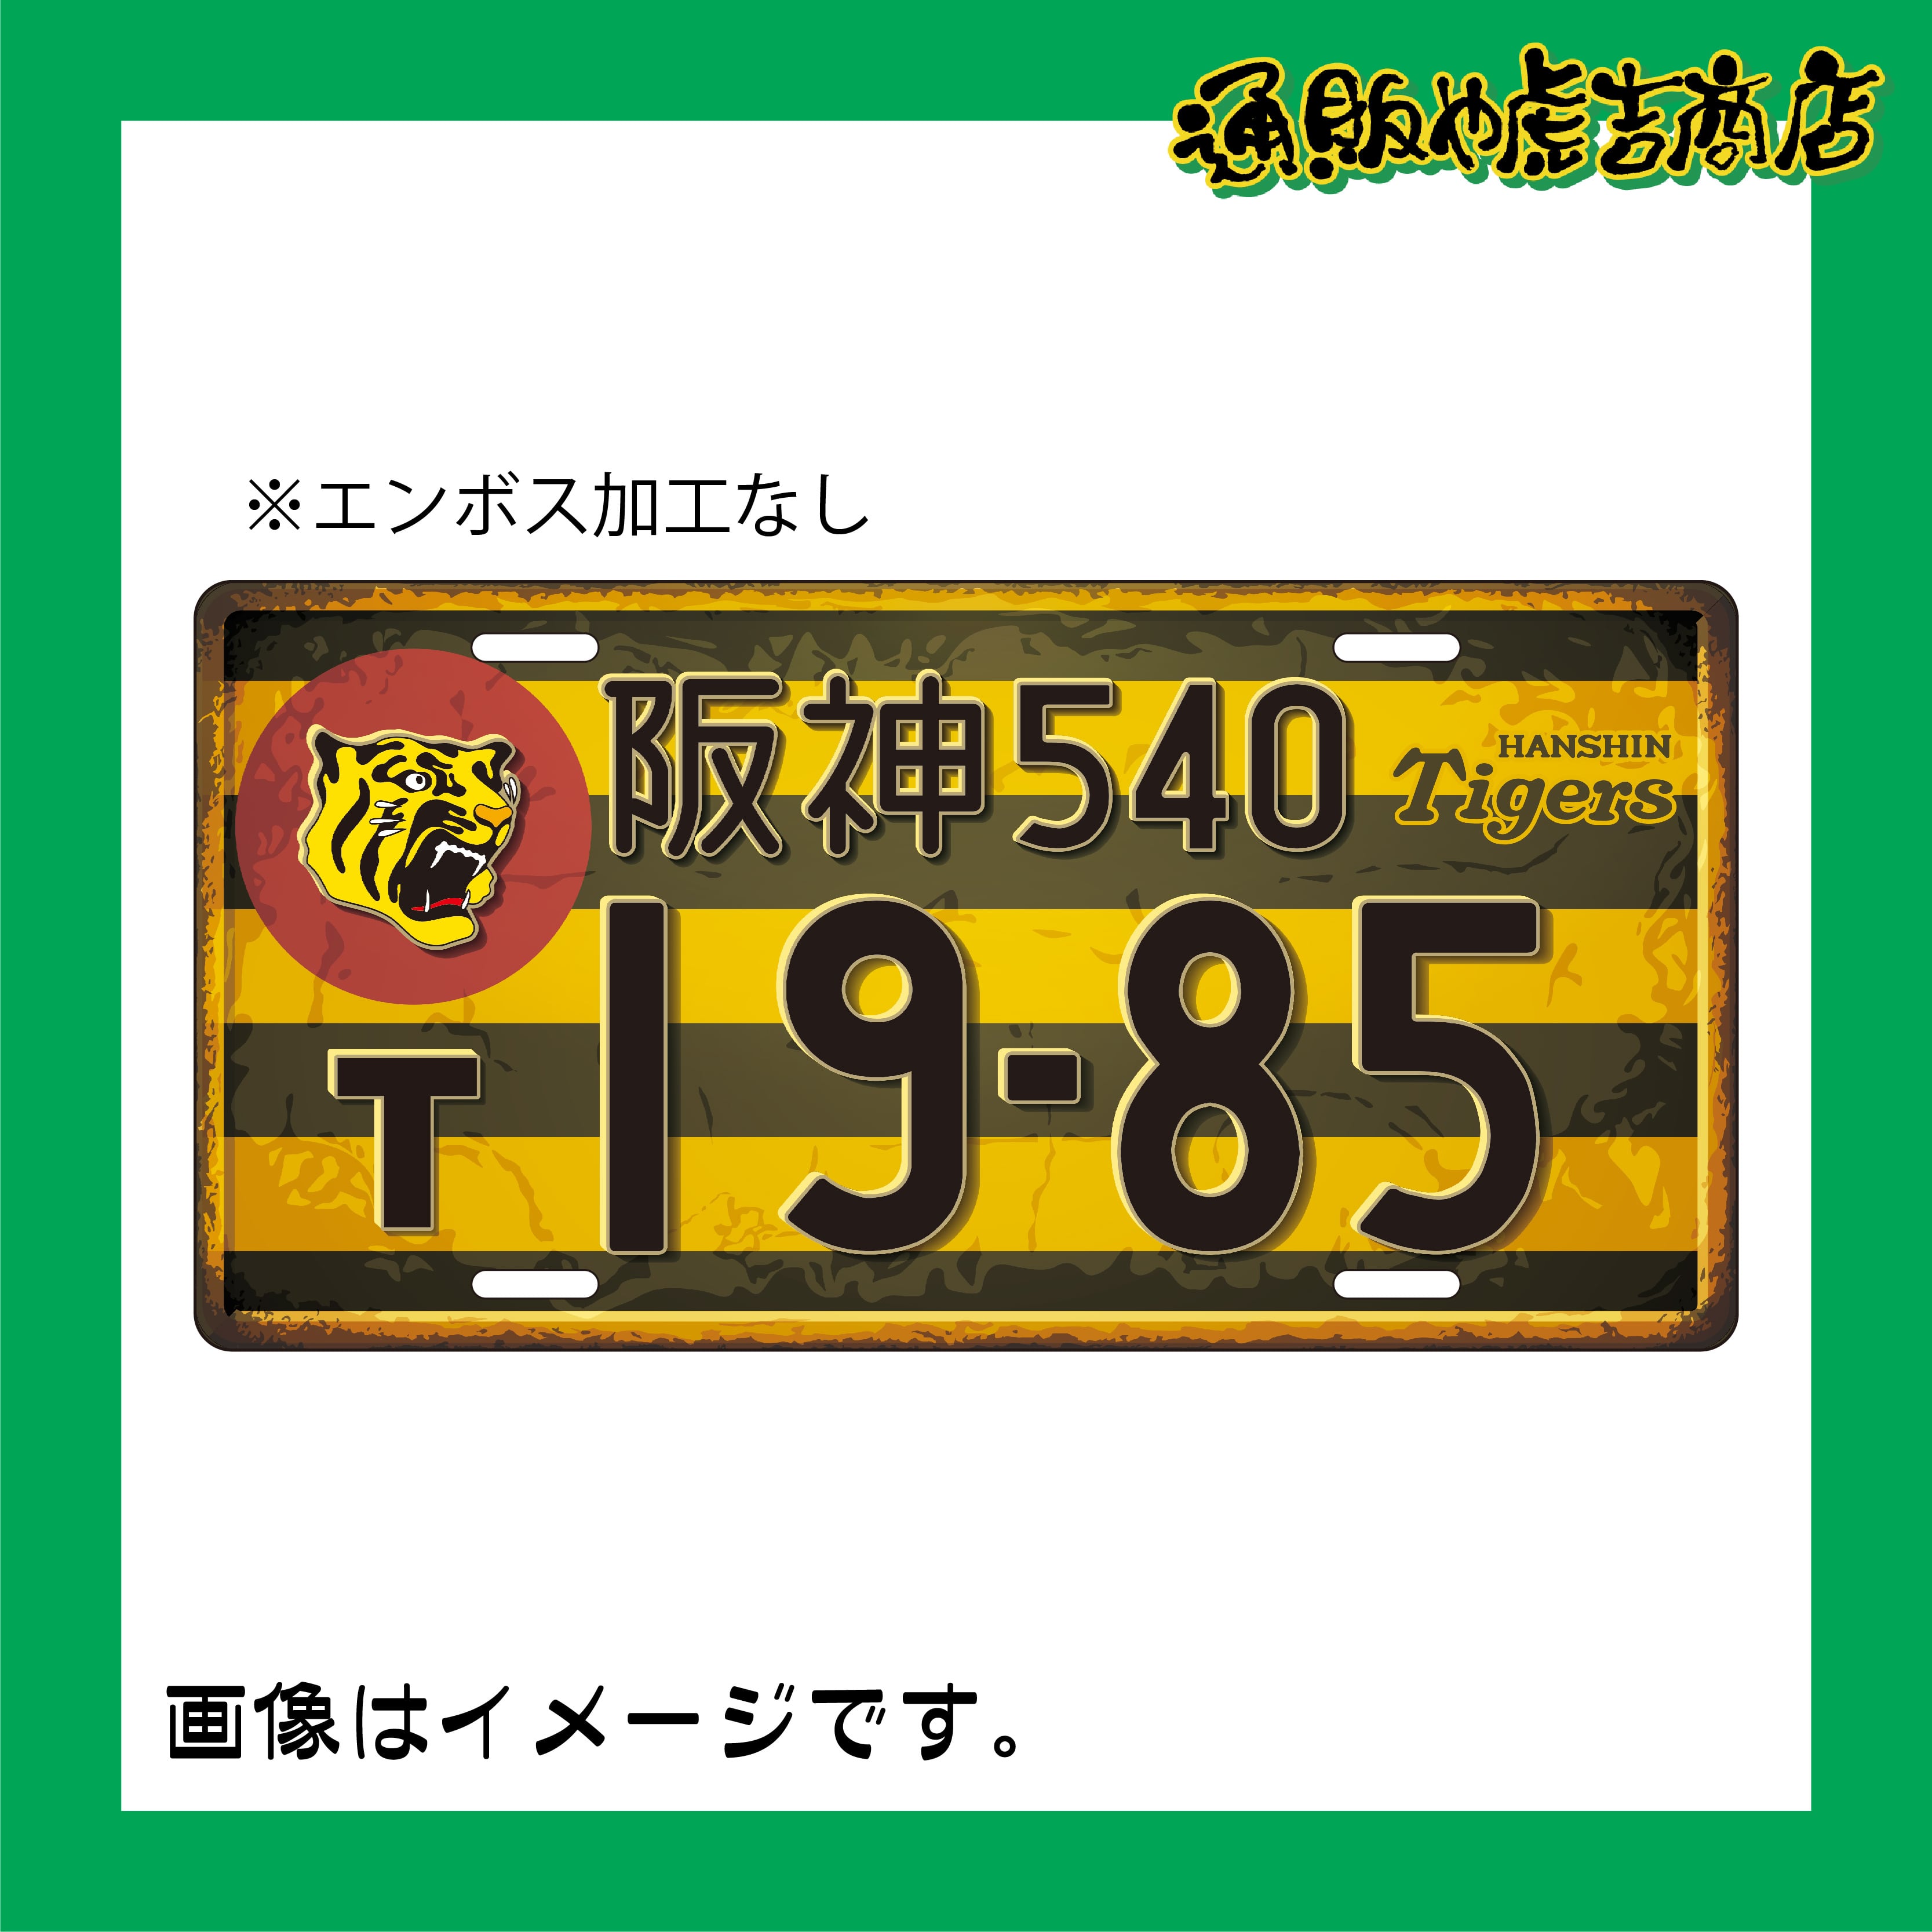 阪神タイガースアルミプレート  球団旗風 (19-85)